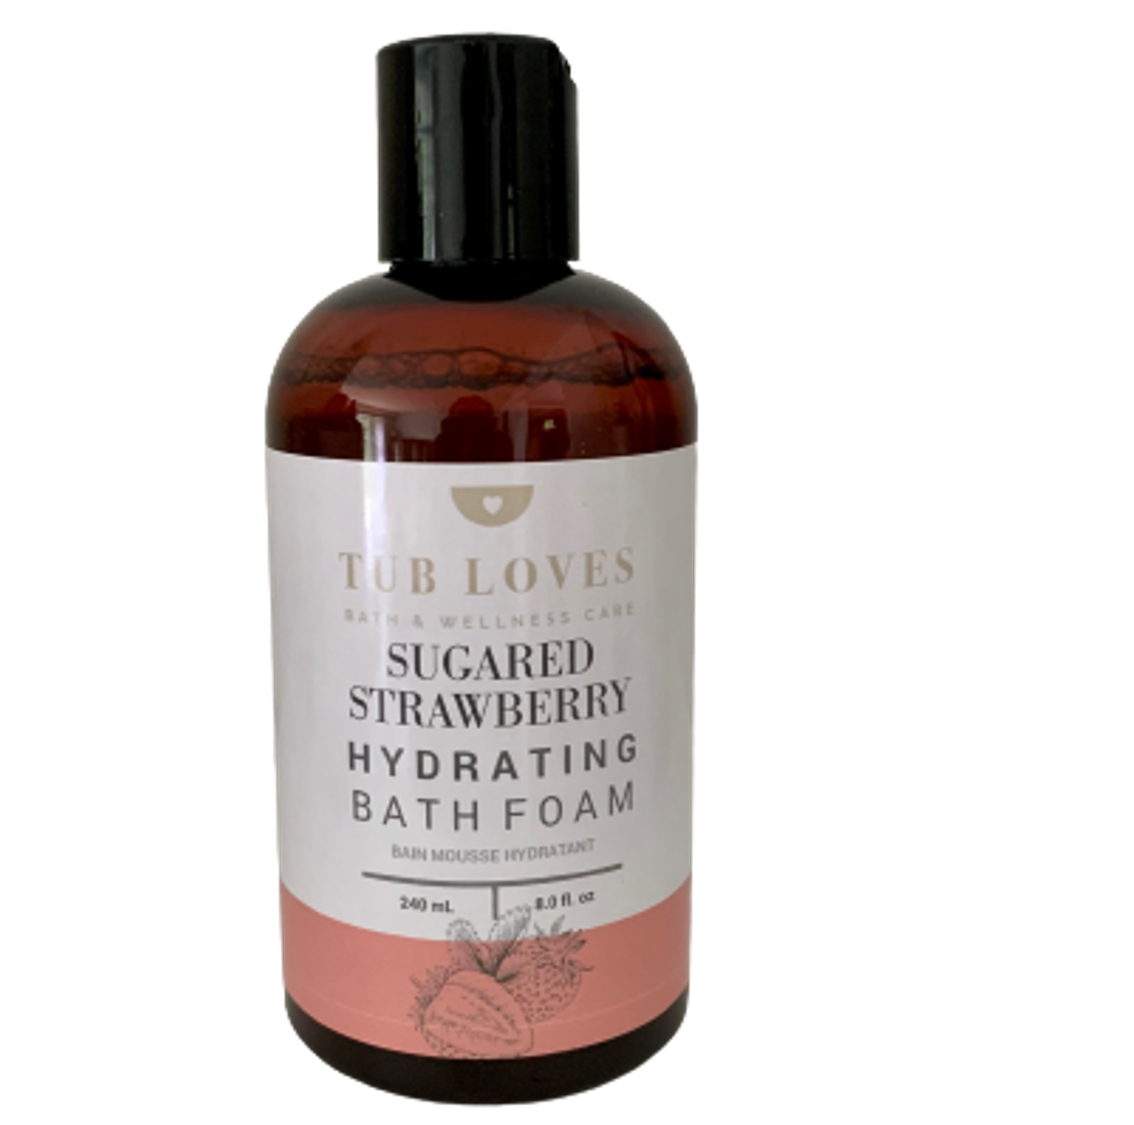 Sugared Strawberry Hydrating Bath Foam